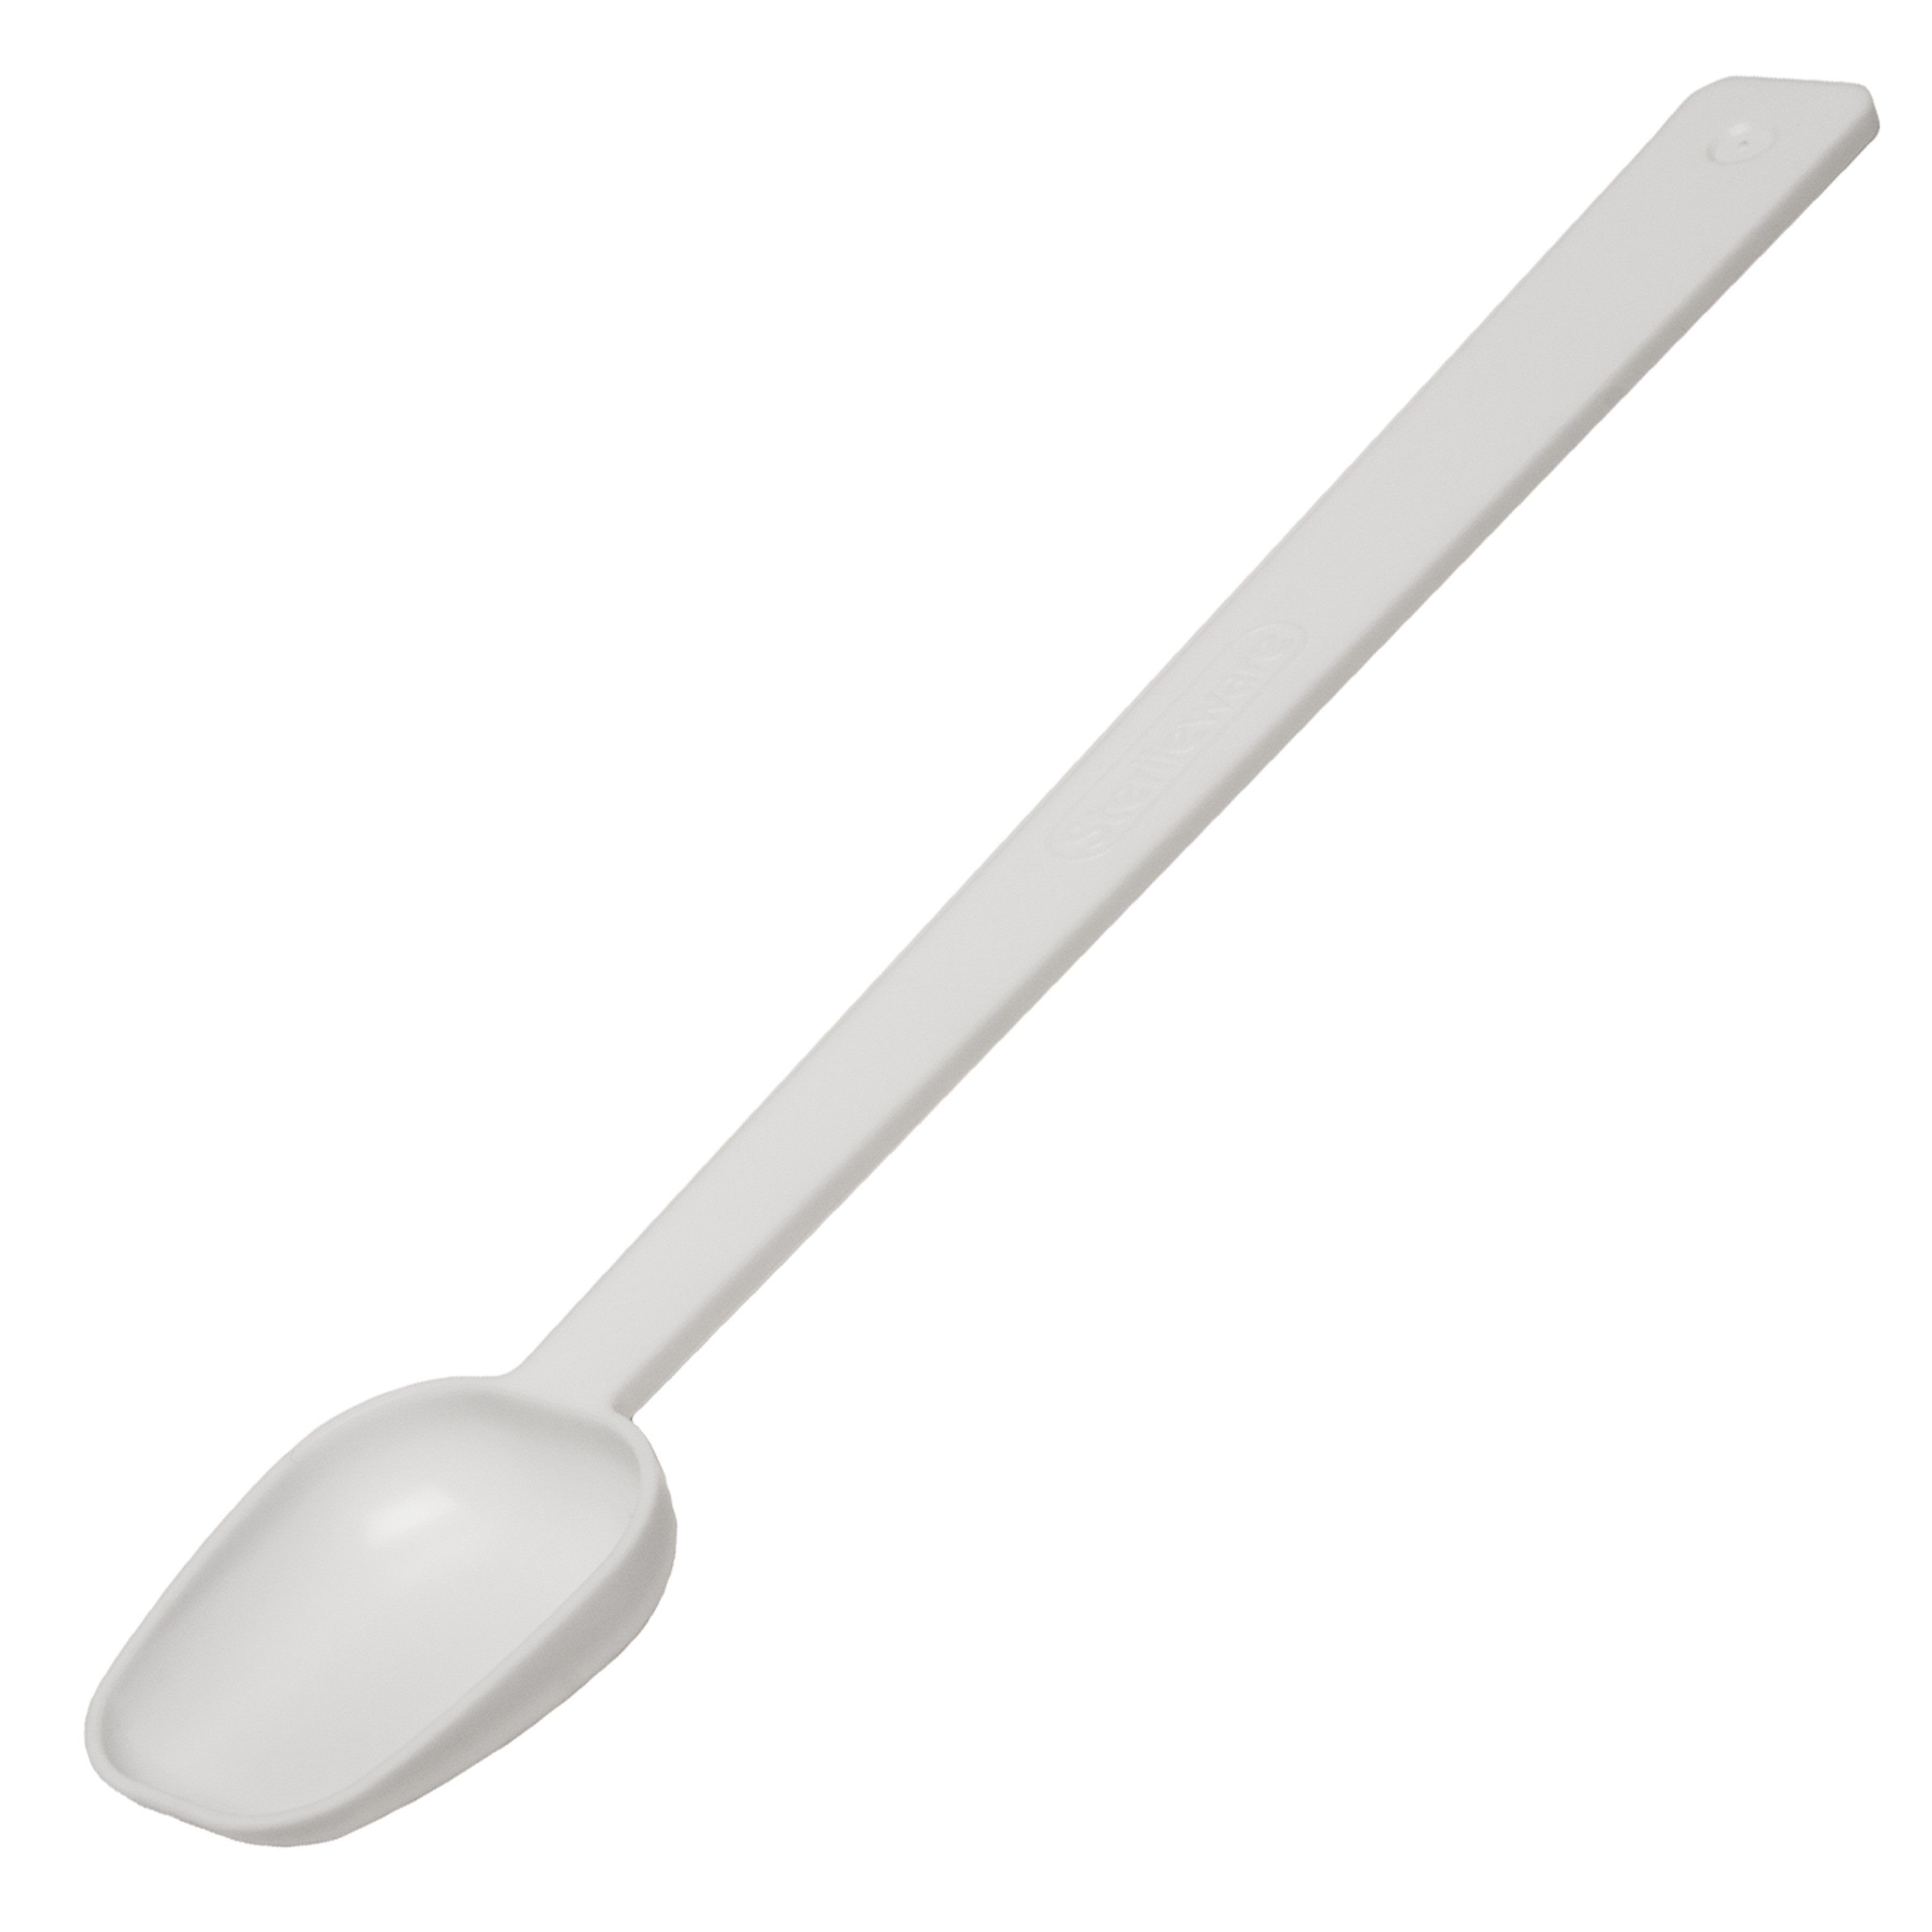 SP Bel-Art Long Handle Sampling Spoon; 4.93ml (1 tsp), Non-Sterile Plastic (Pack of 12)